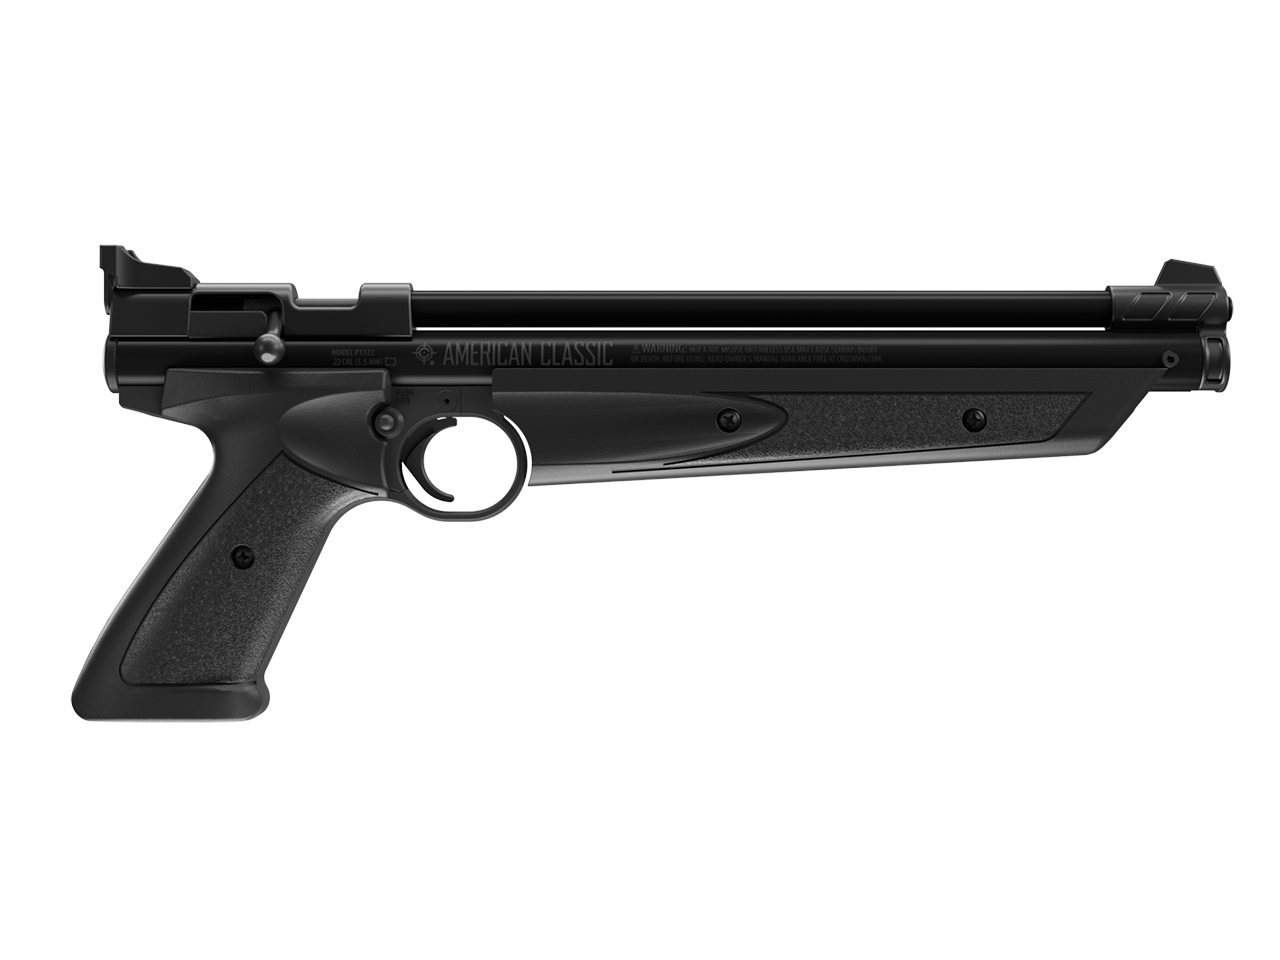 Vorkompressions Luftpistole Crosman American Classic P1322 Kaliber 5,5 mm Diabolo (P18)